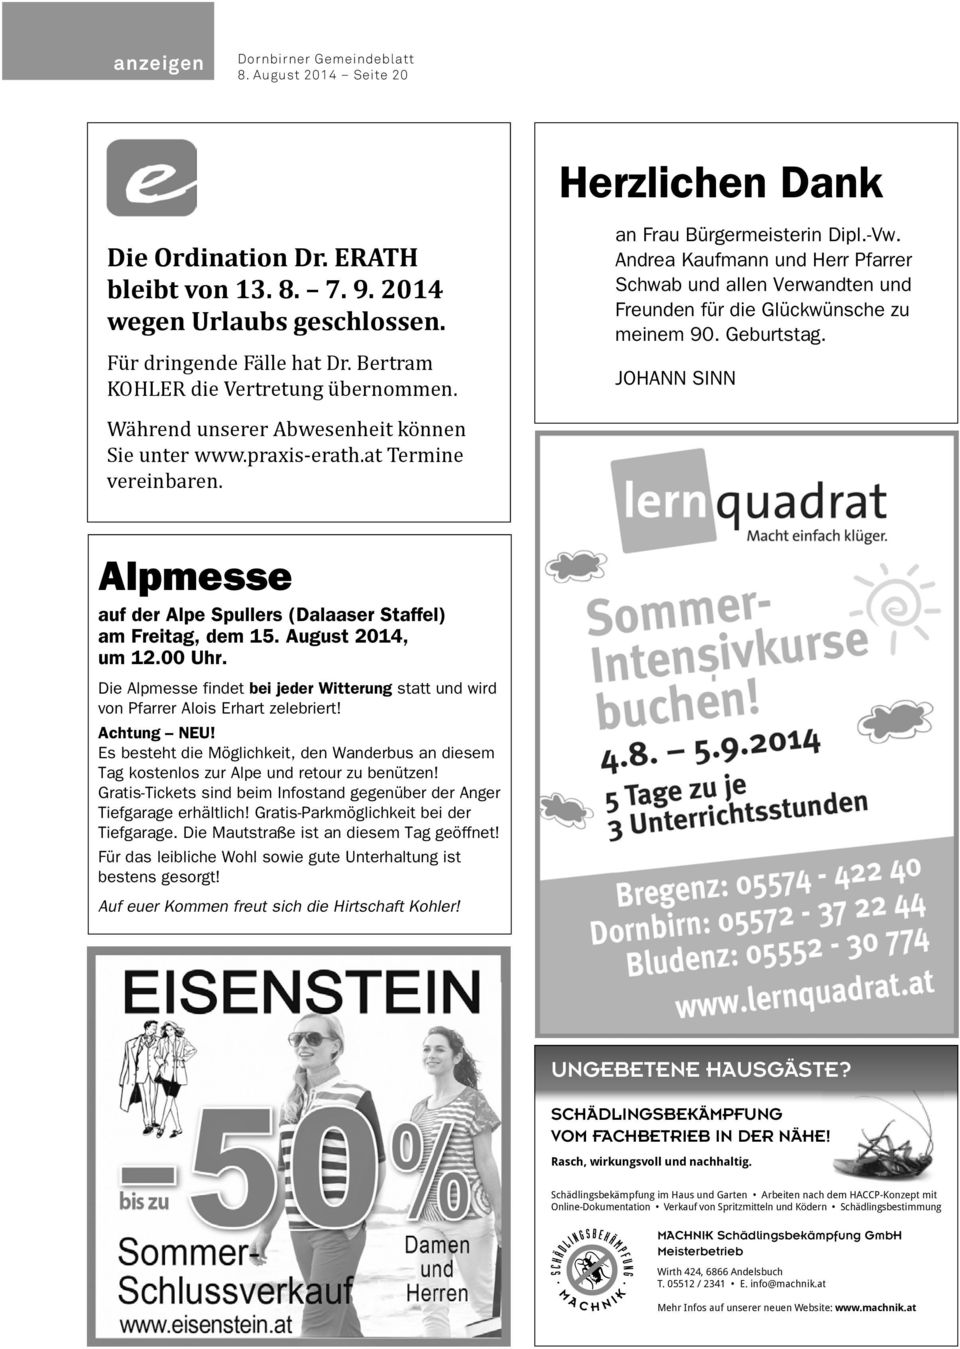 JOHANN SINN Während unserer Abwesenheit können Sie unter www.praxis-erath.at Termine vereinbaren. Alpmesse auf der Alpe Spullers (Dalaaser Staffel) am Freitag, dem 15. August 2014, um 12.00 Uhr.